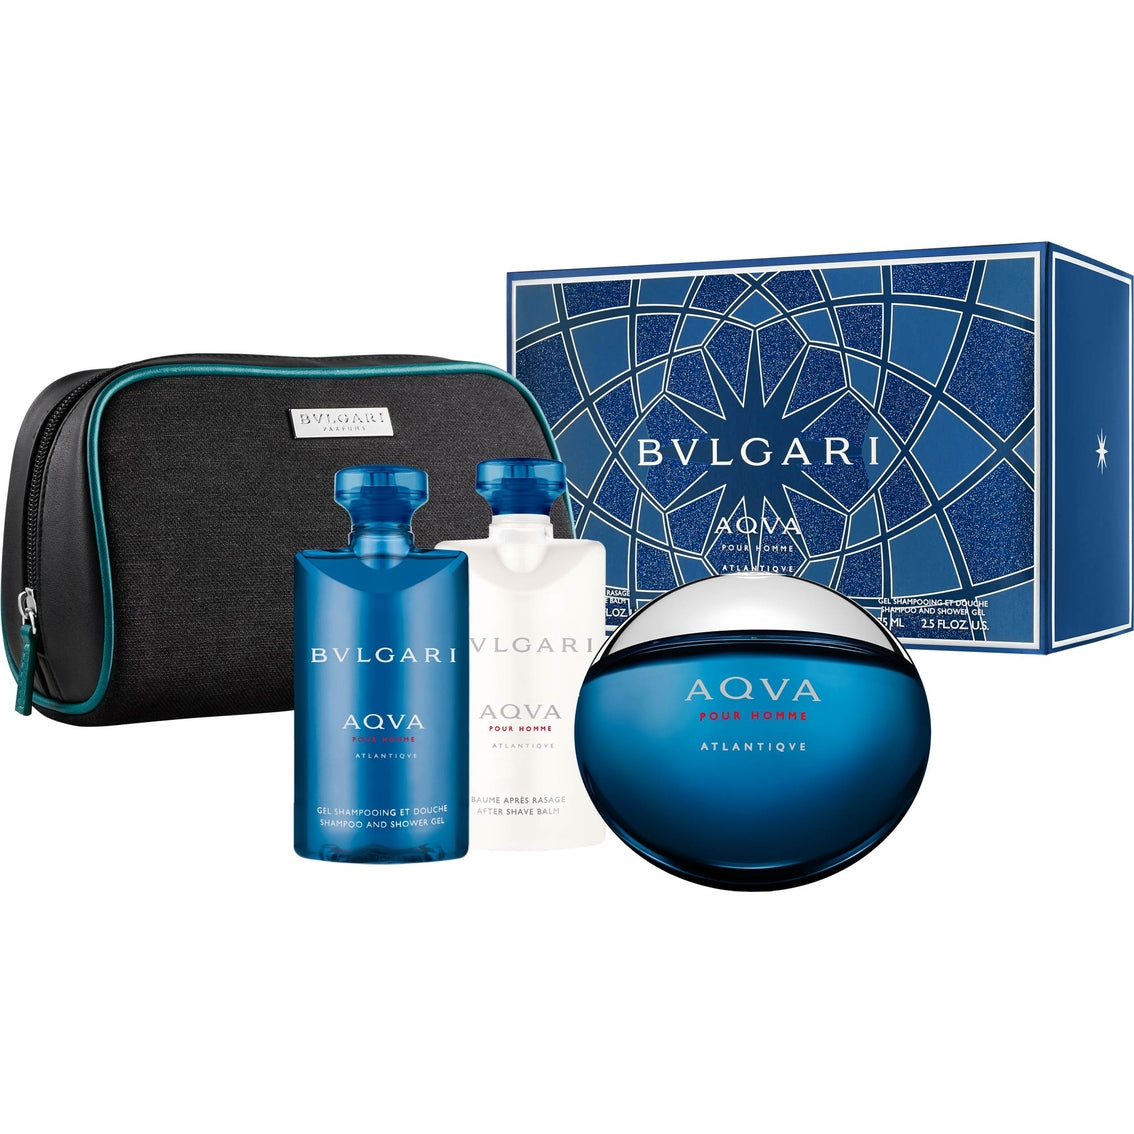 Bvlgari Aqva / Aqua Atlantique - Perfume Shop